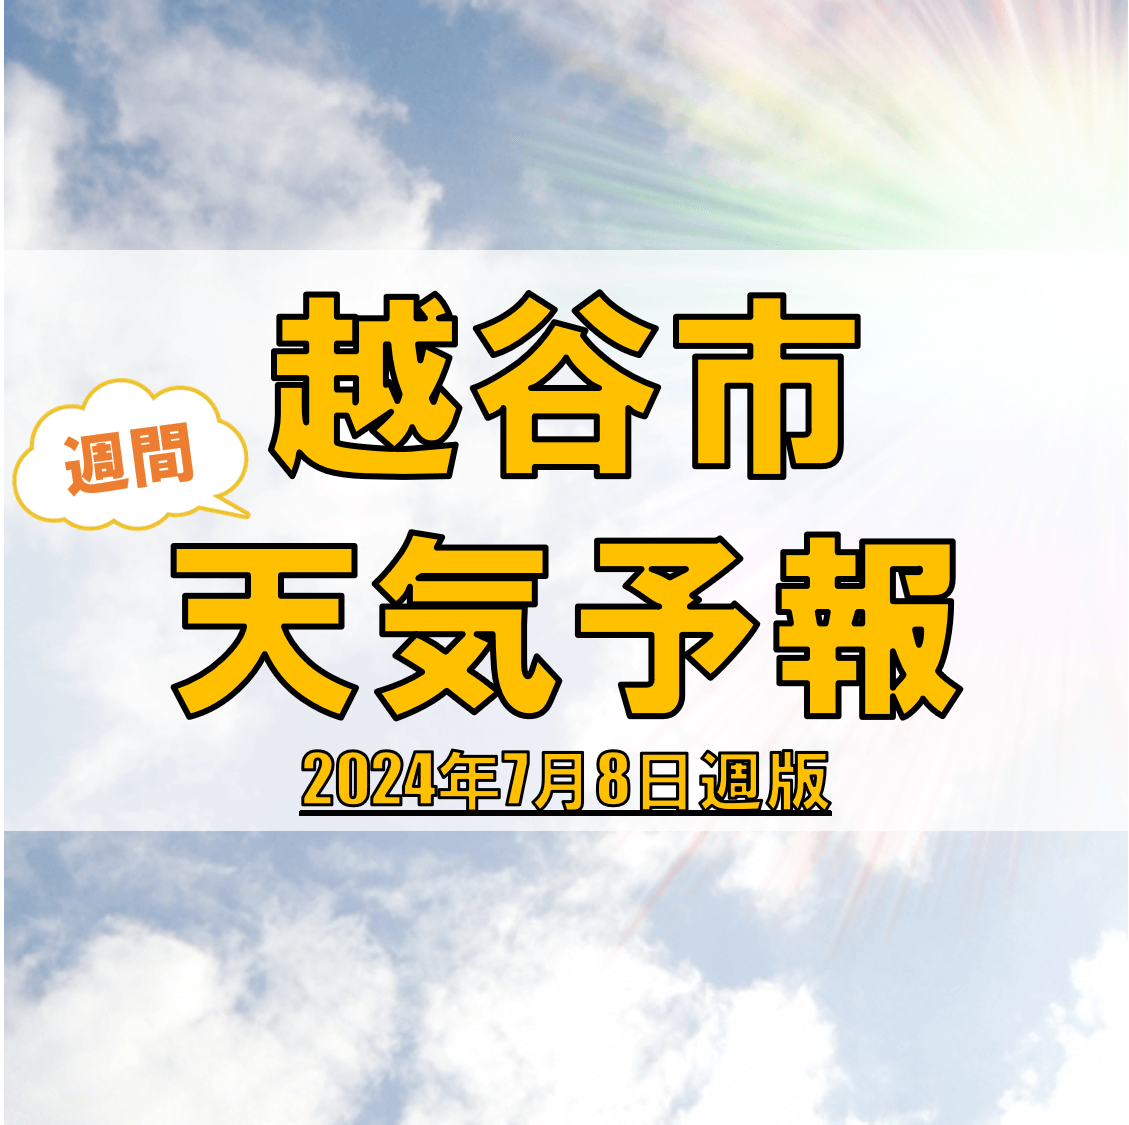 越谷市、週間天気予報【2024年7月8日週】